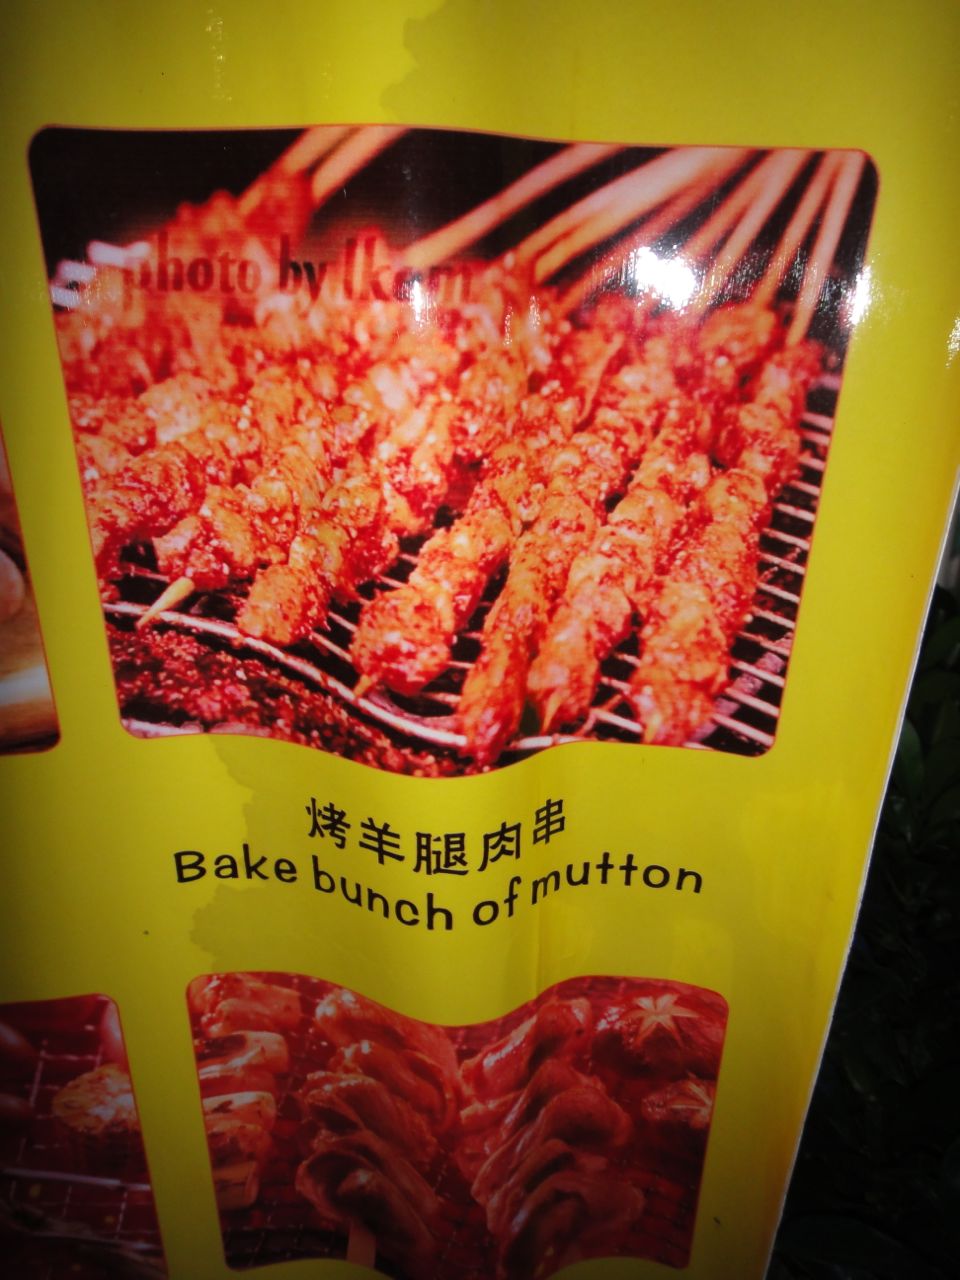 Beijing menu sign mutton